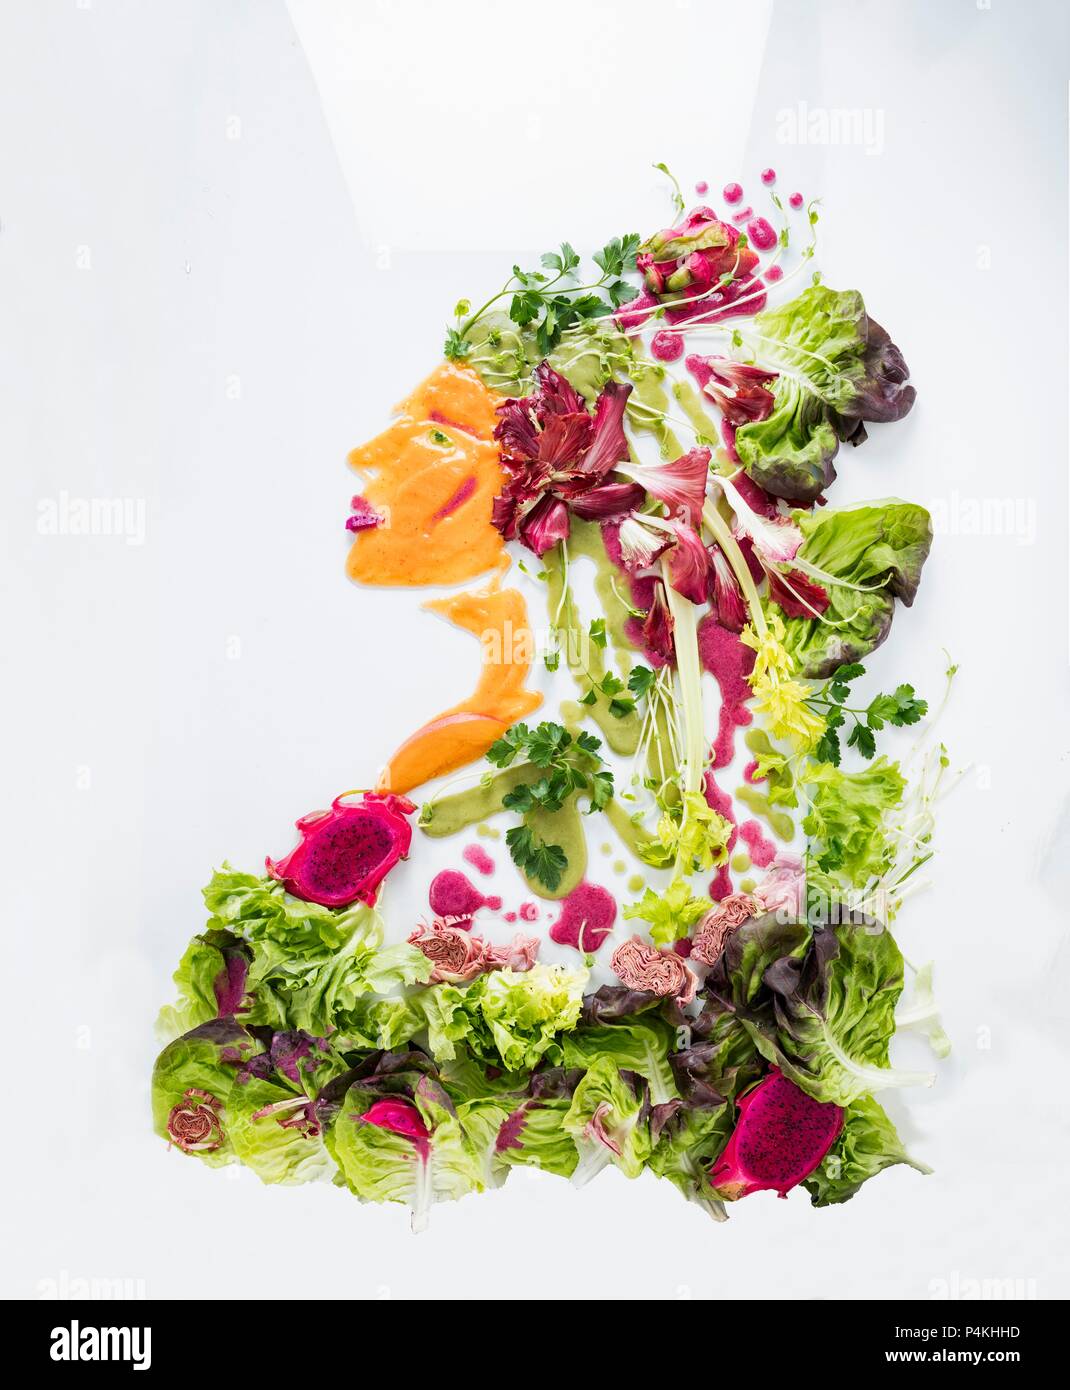 Un retrato de una mujer de la lechuga, las verduras y la fruta sobre una superficie blanca Foto de stock